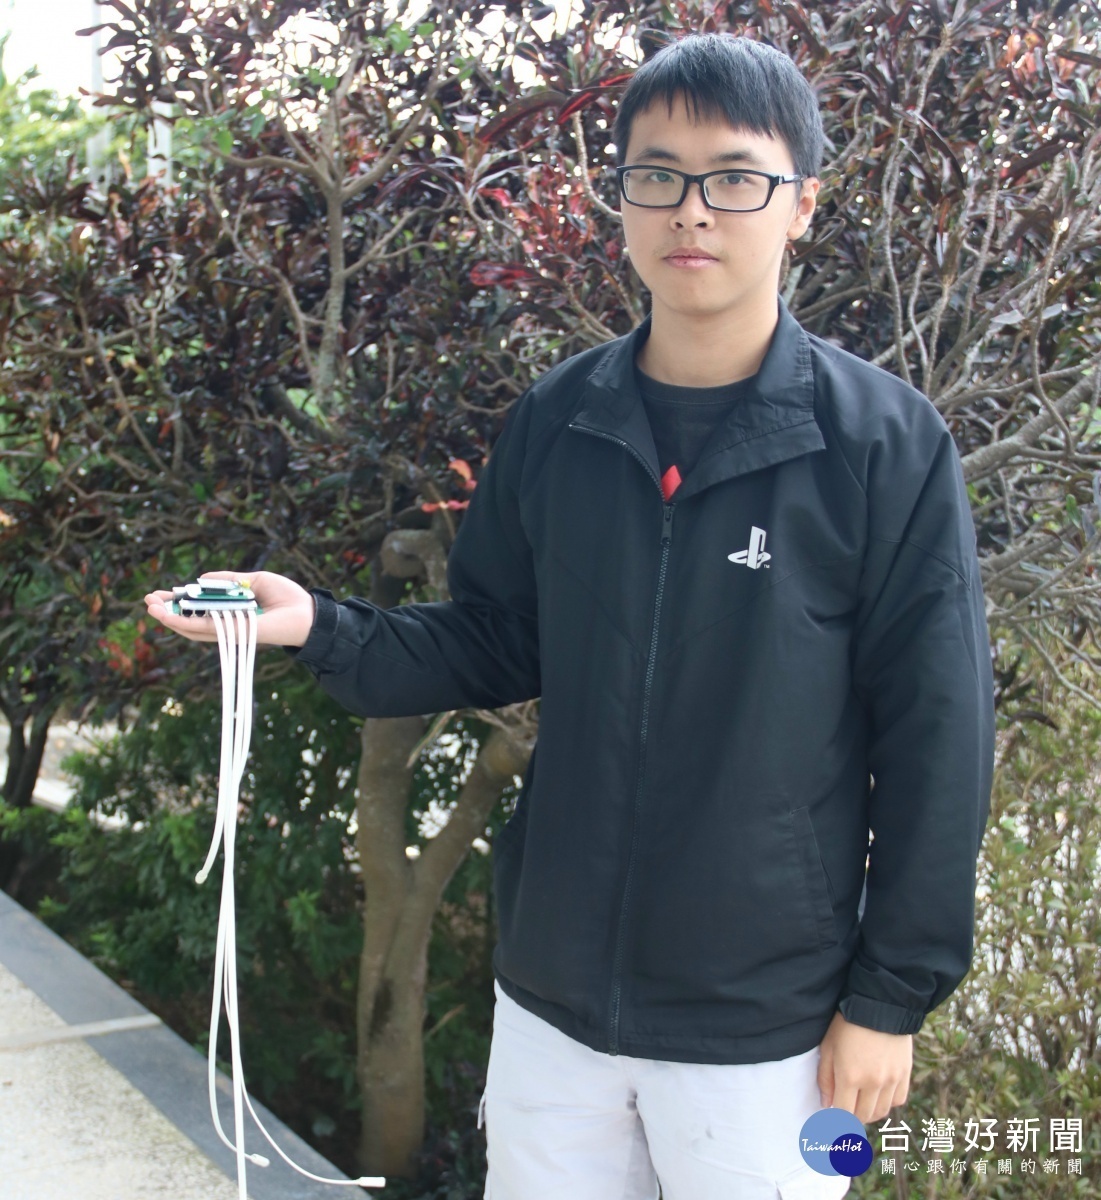 弘光學生設感測器監控水中溫度　助文蛤養殖業減少損失 台灣好新聞 第1張